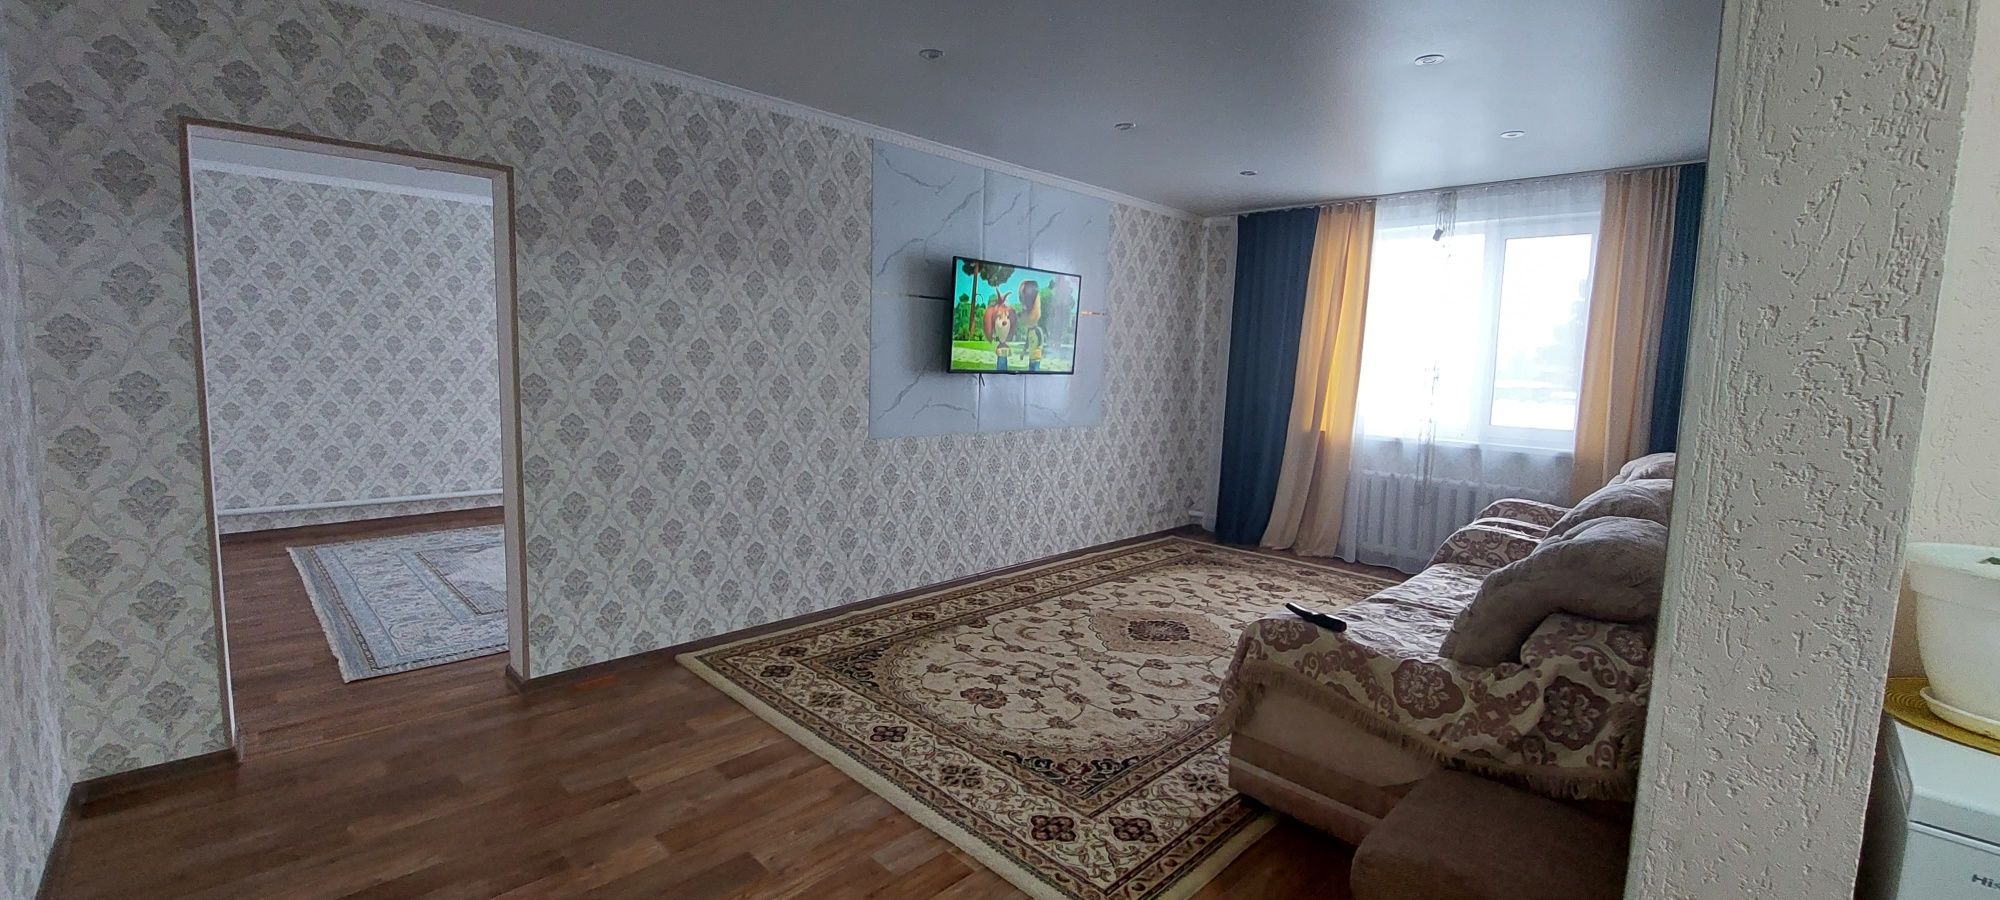 Продам или Обменяю  дом в Бишкуле на квартиру в городе